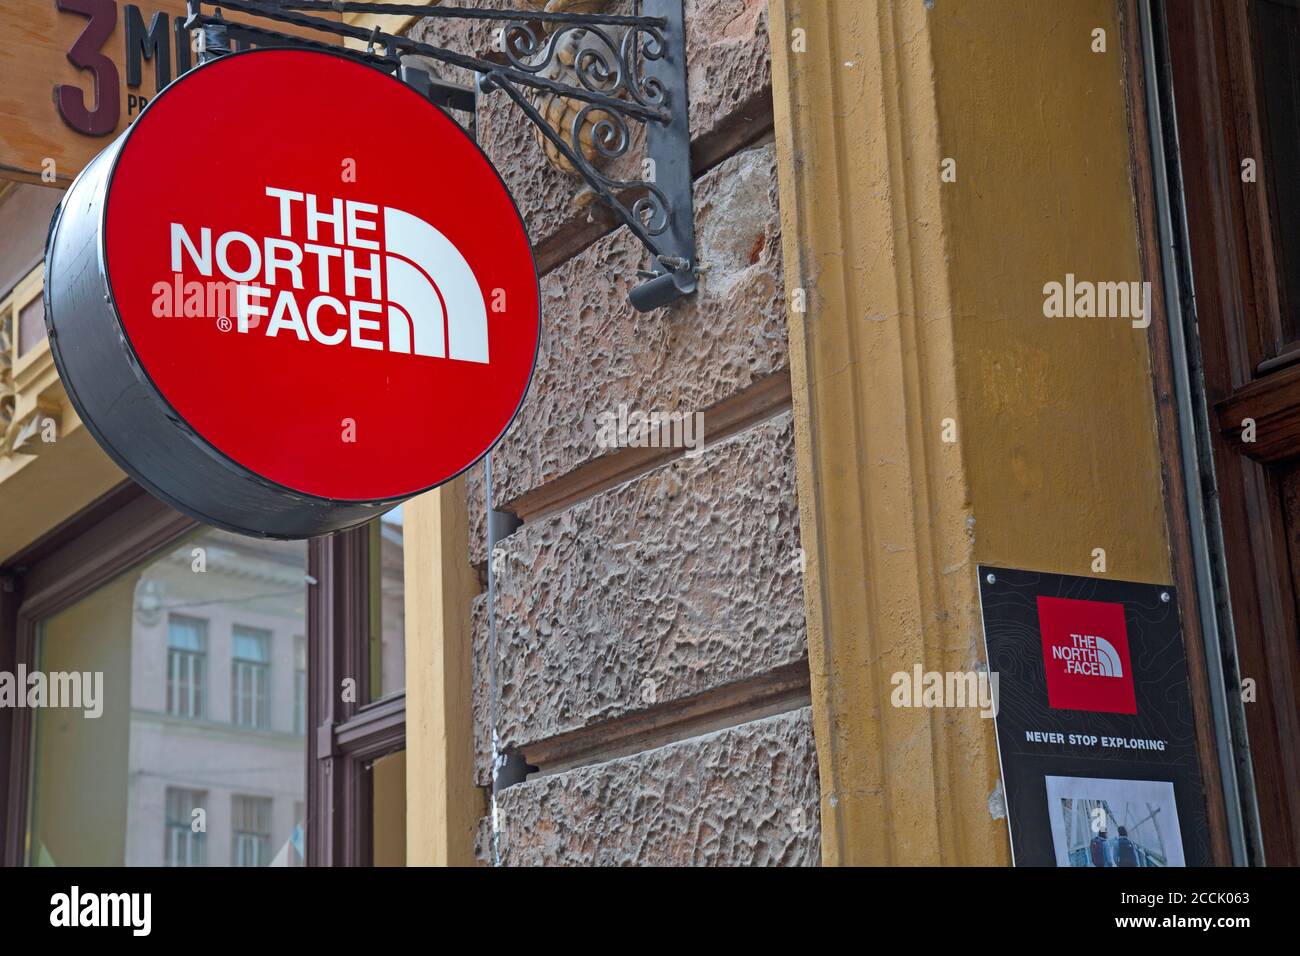 The North Face Shop Banque d'image et photos - Alamy